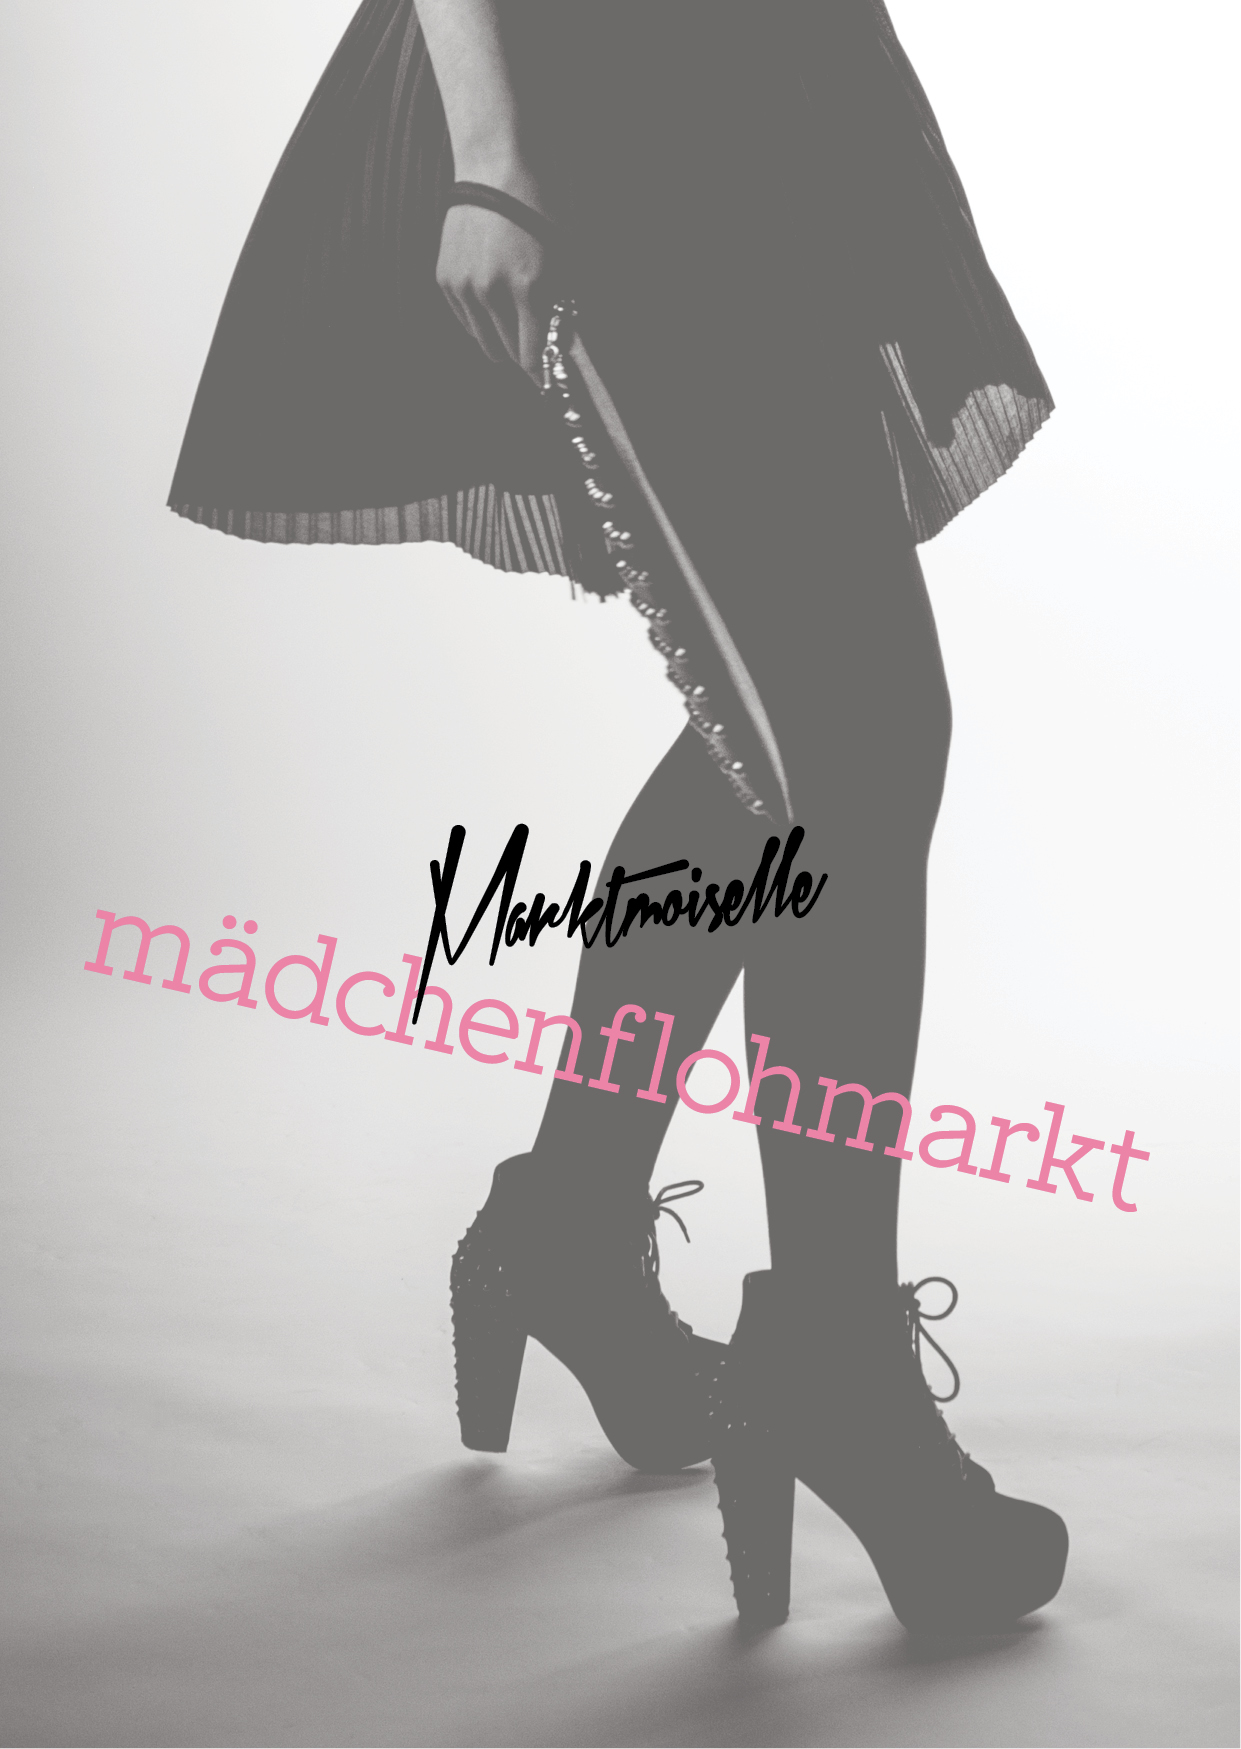 marktmoiselle_okt17_flyer.jpg